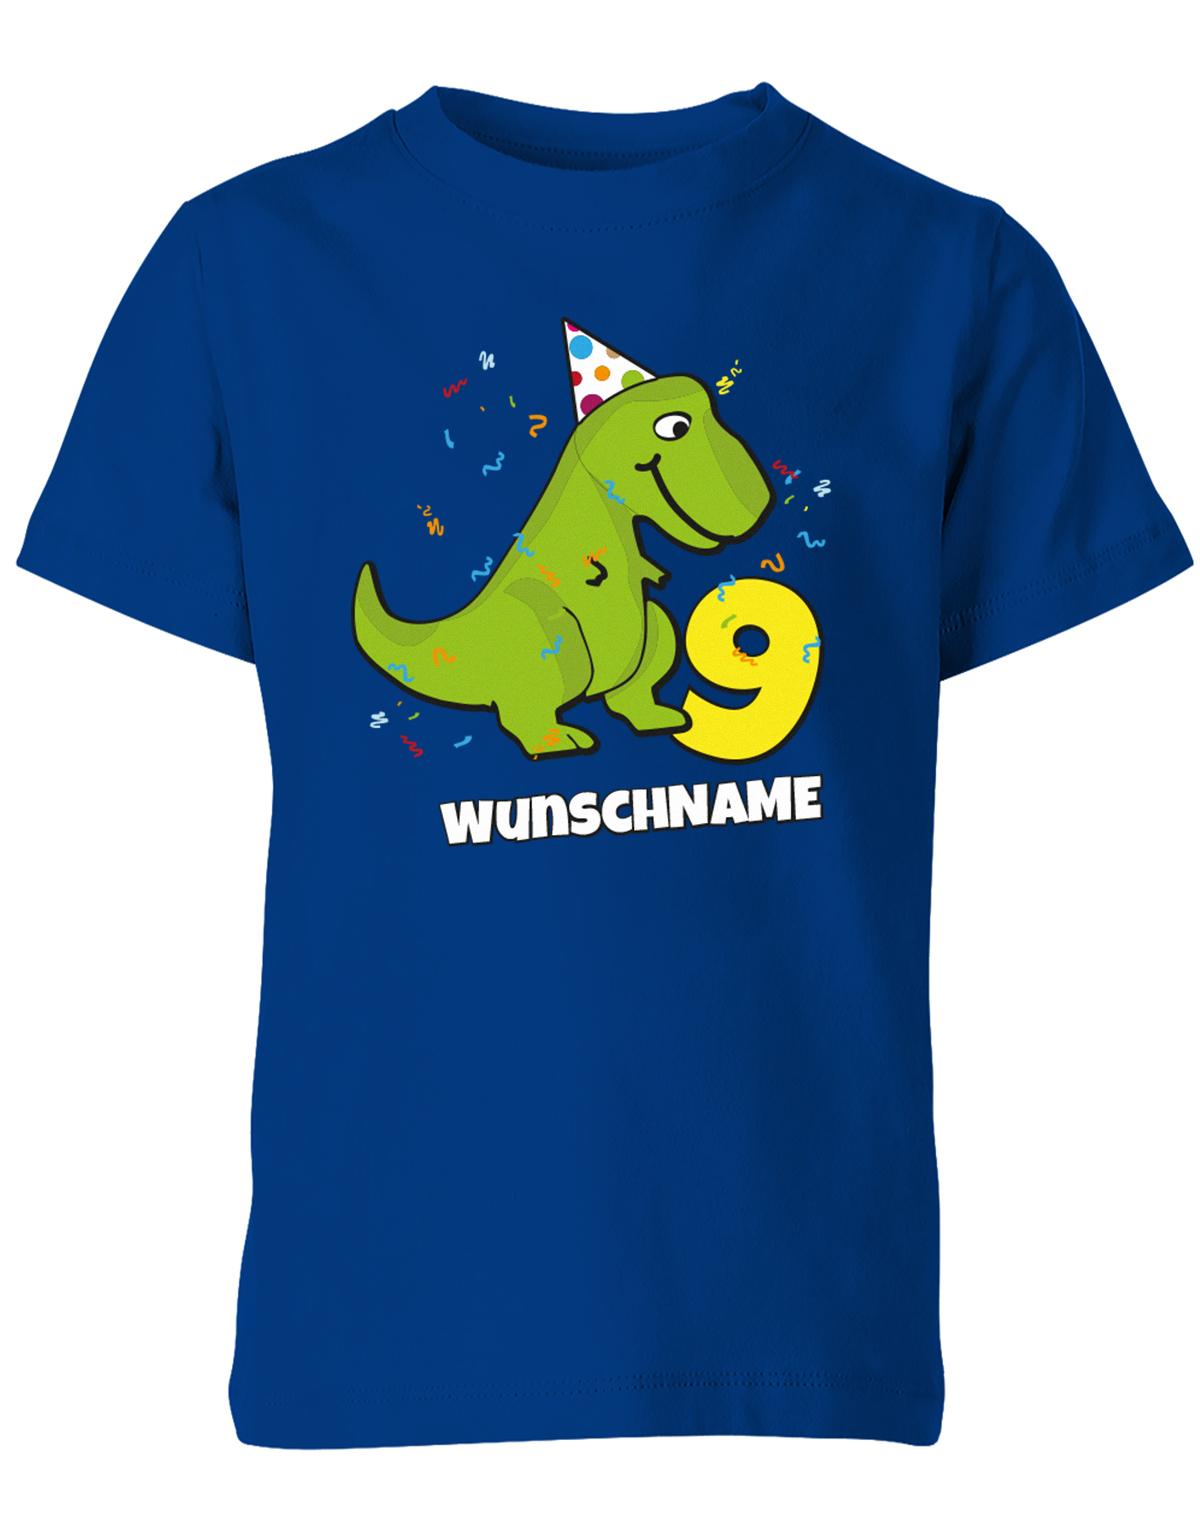 ich-bin-9-Dinosaurier-t-rex-wunschname-geburtstag-kinder-shirt-royalblau